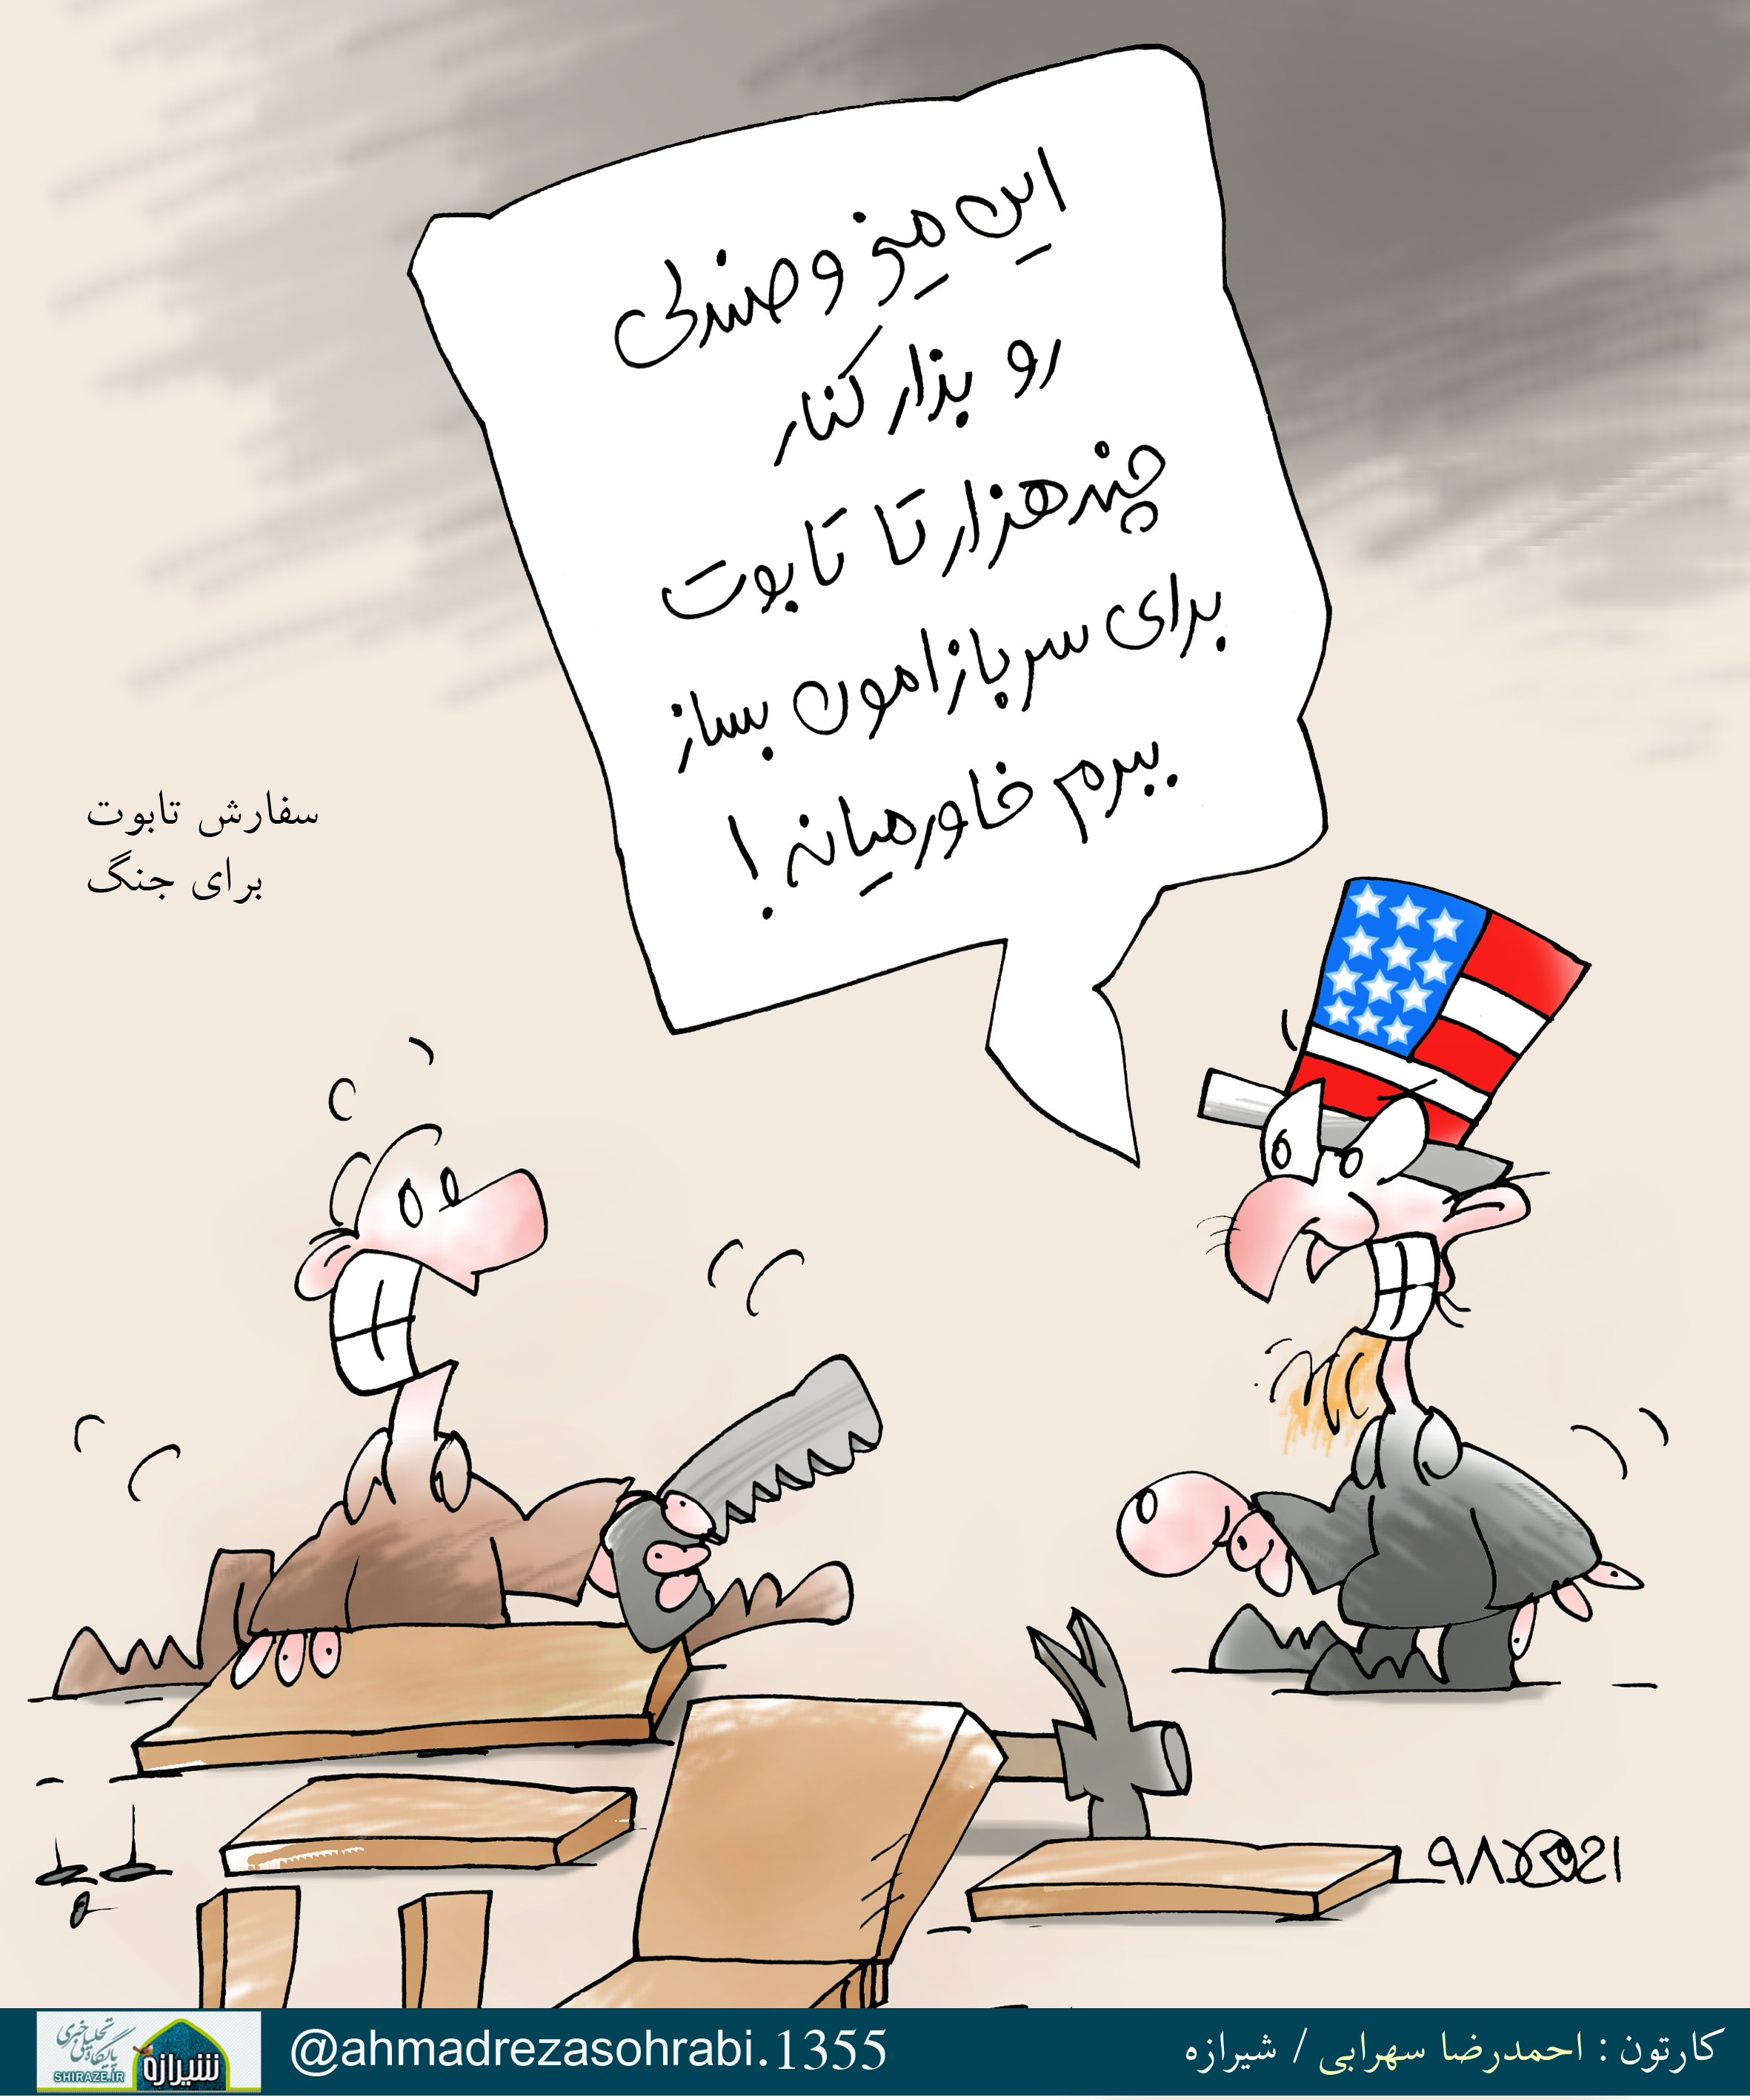 سفارش تابوت برای جنگ! / کارتون : احمدرضا سهرابی